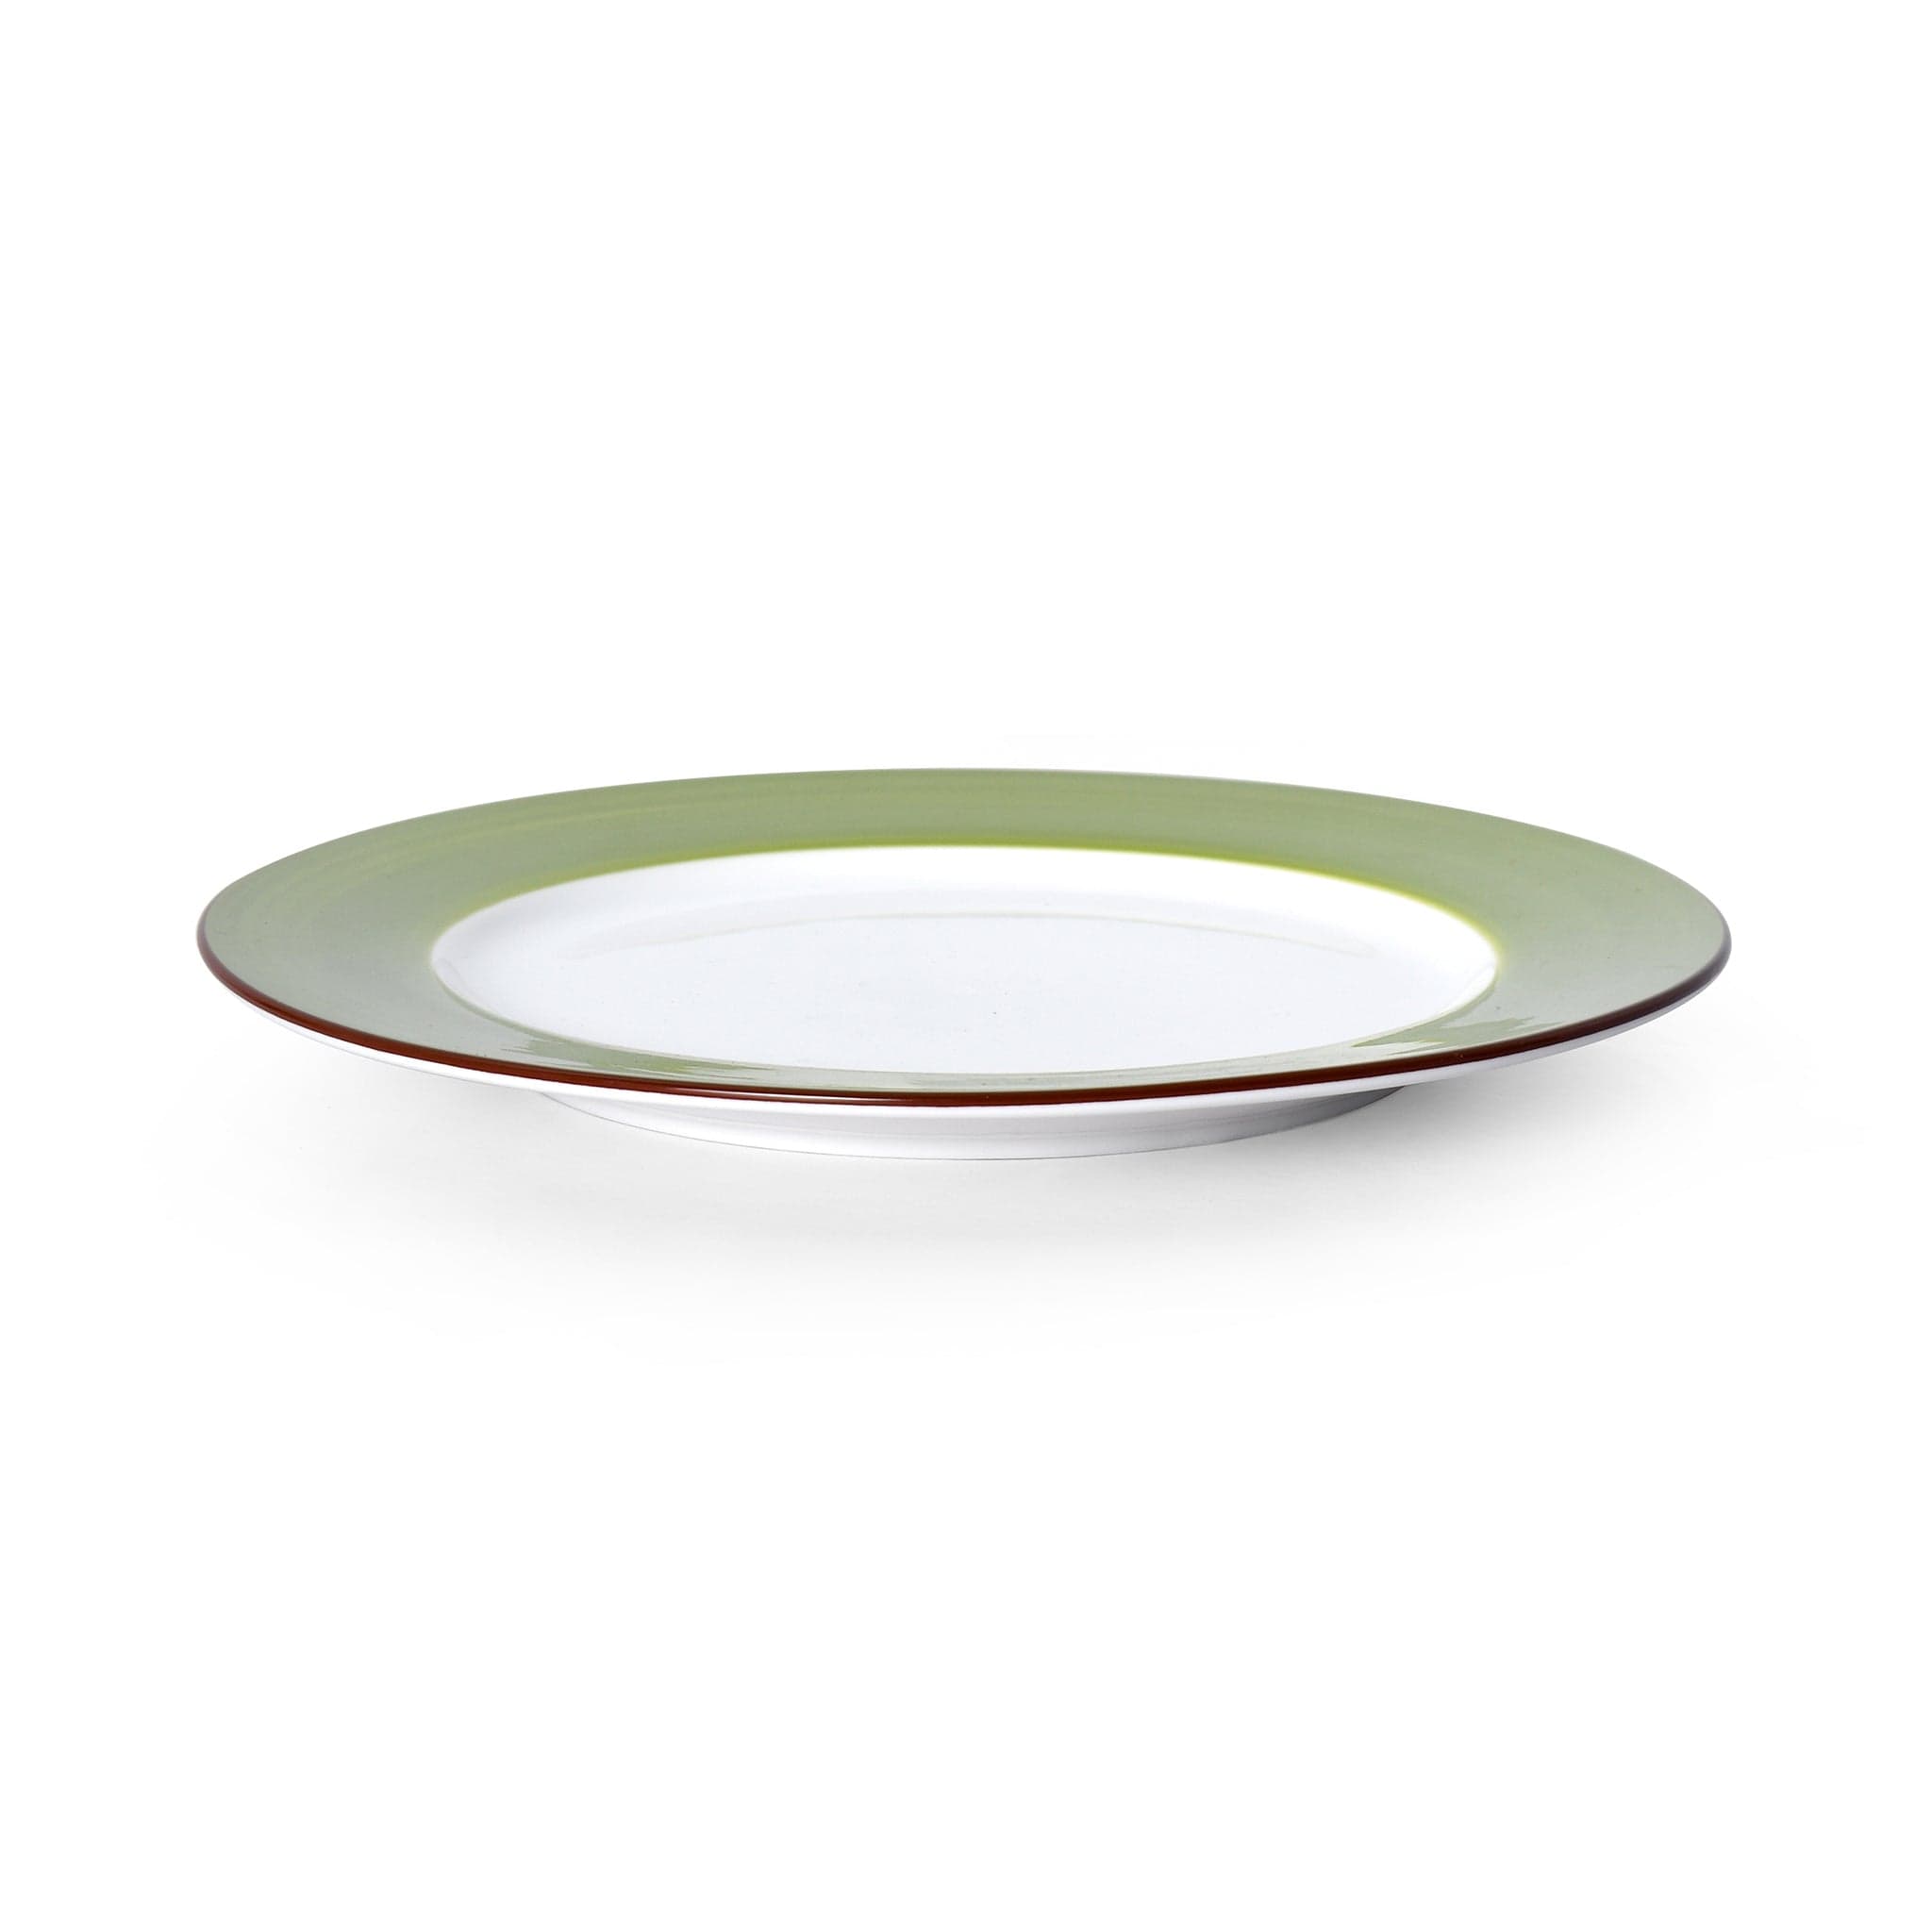 Bistro Sunday Brunch Porcelain Plate 10" Green #color_green